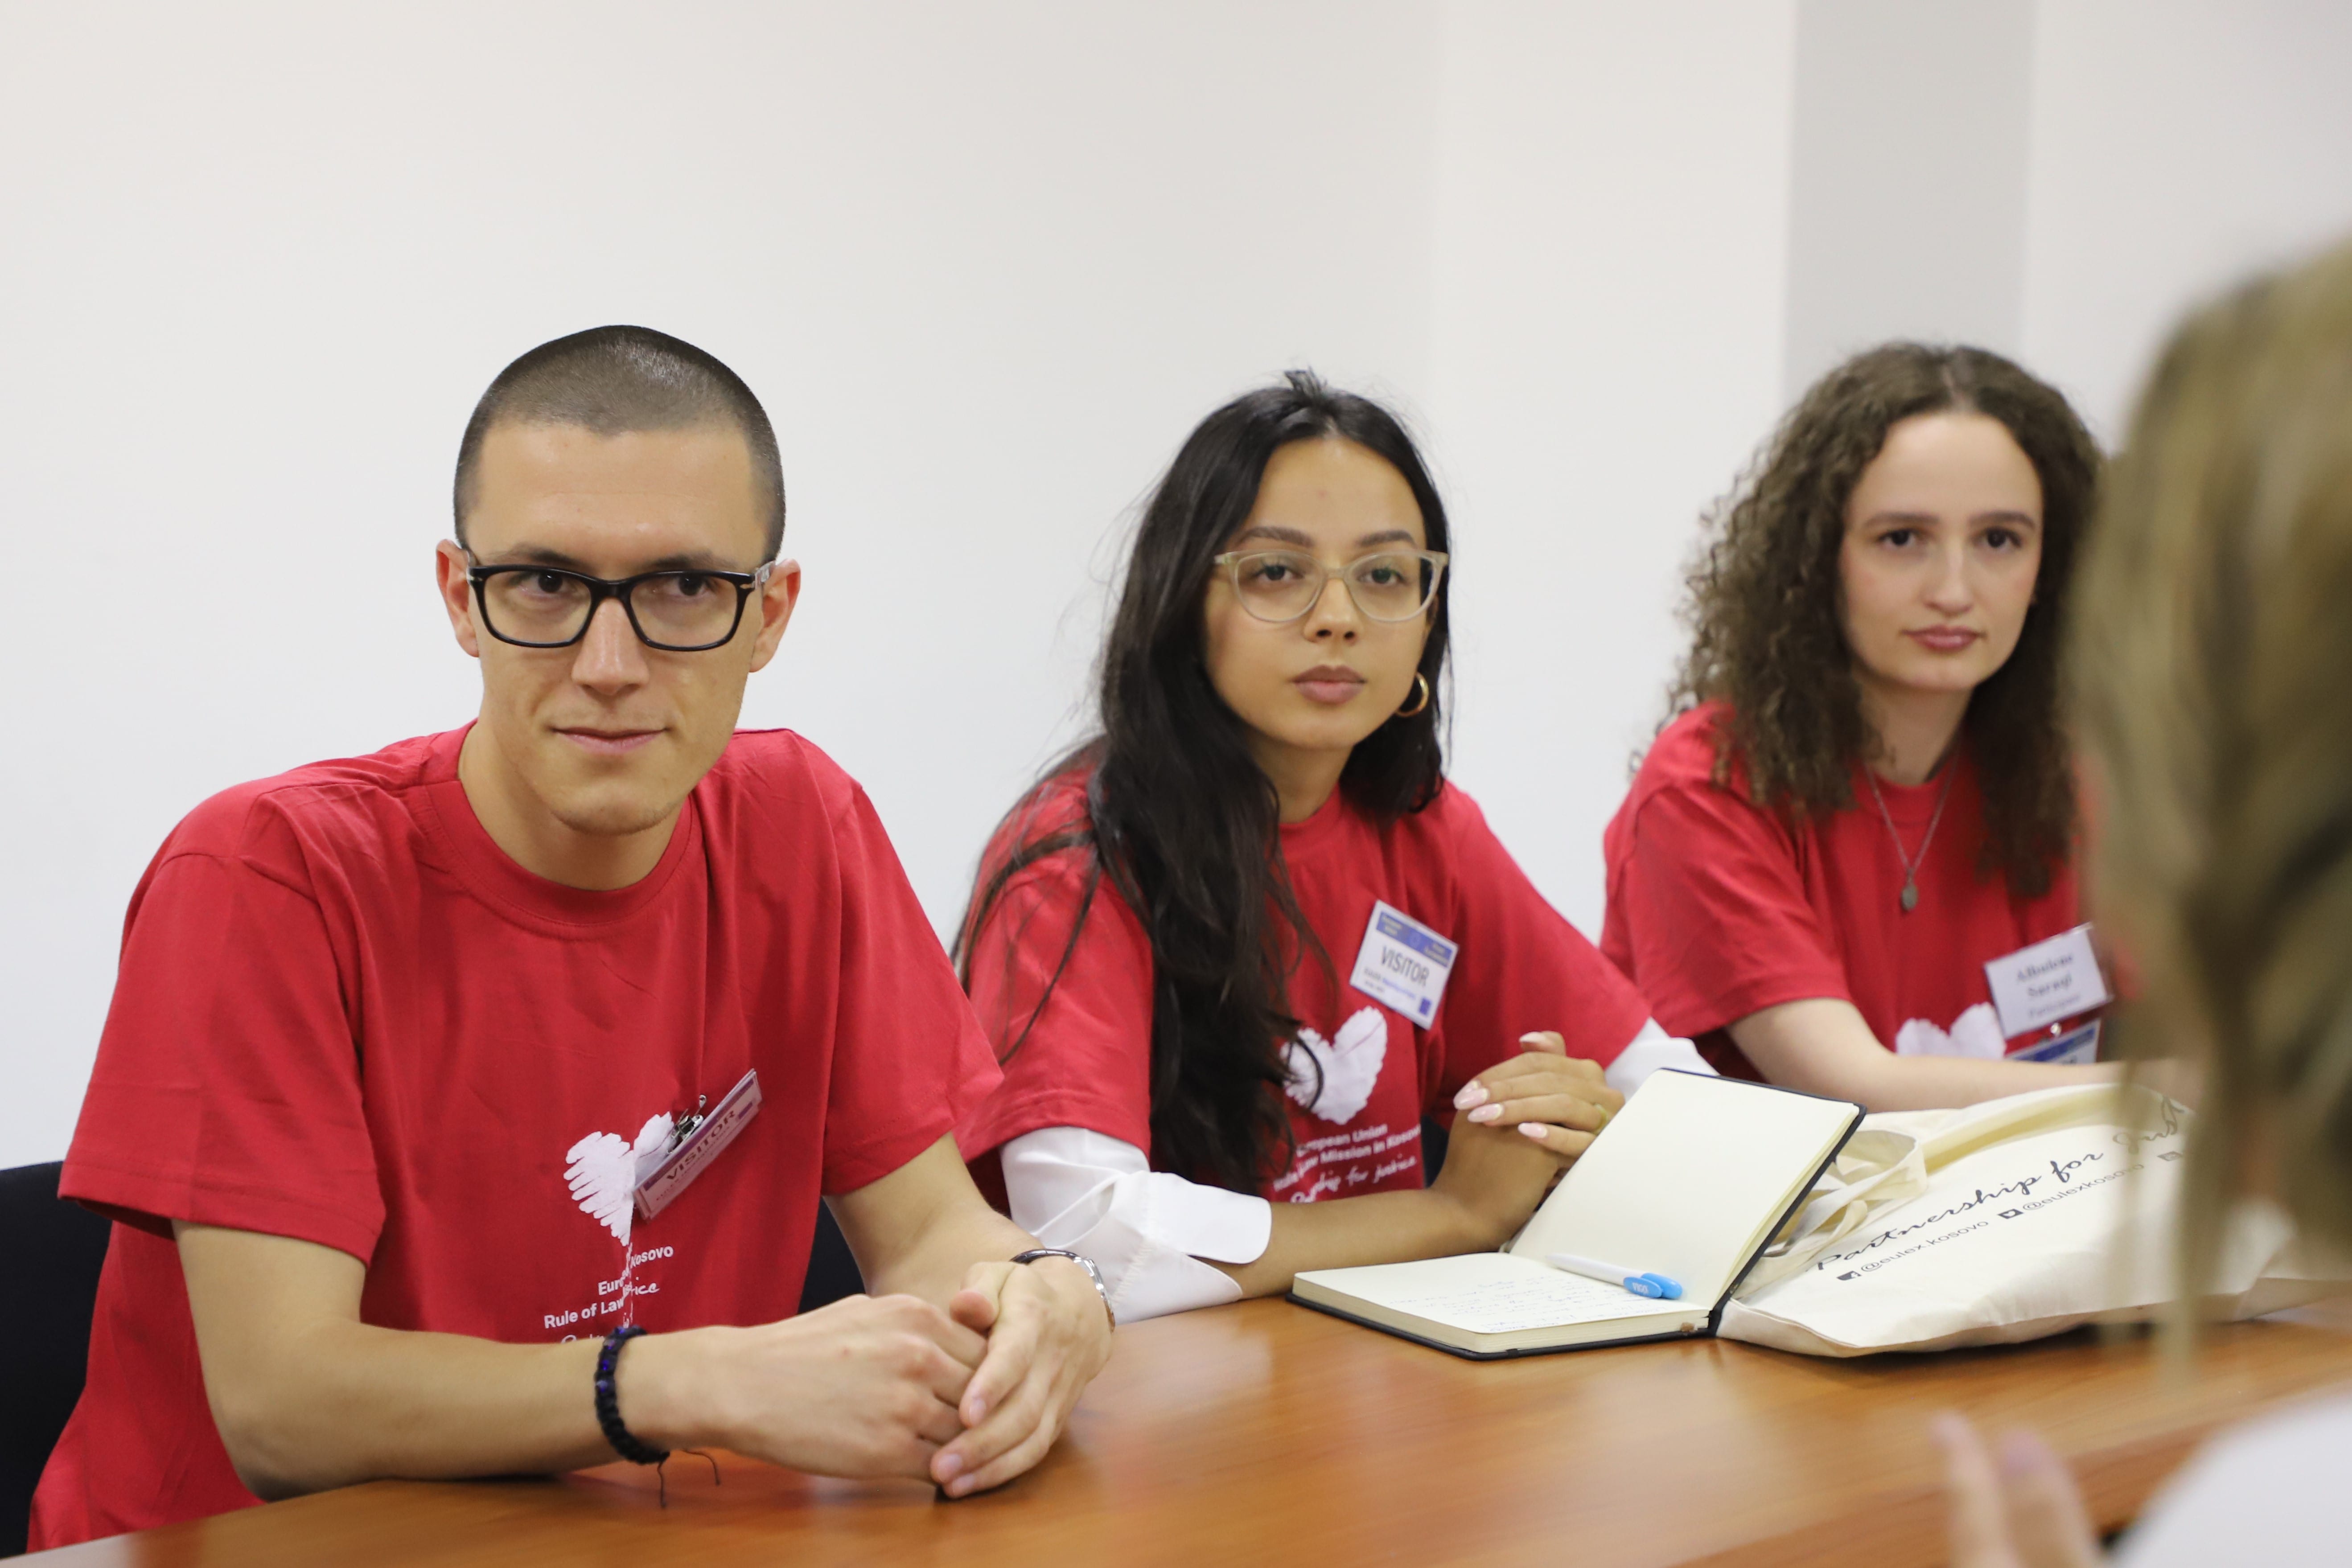 EULEX-i organizoi punëtorinë e parë për zhvillimin e karrierës në bashkëpunim me Universitetin e Prishtinës